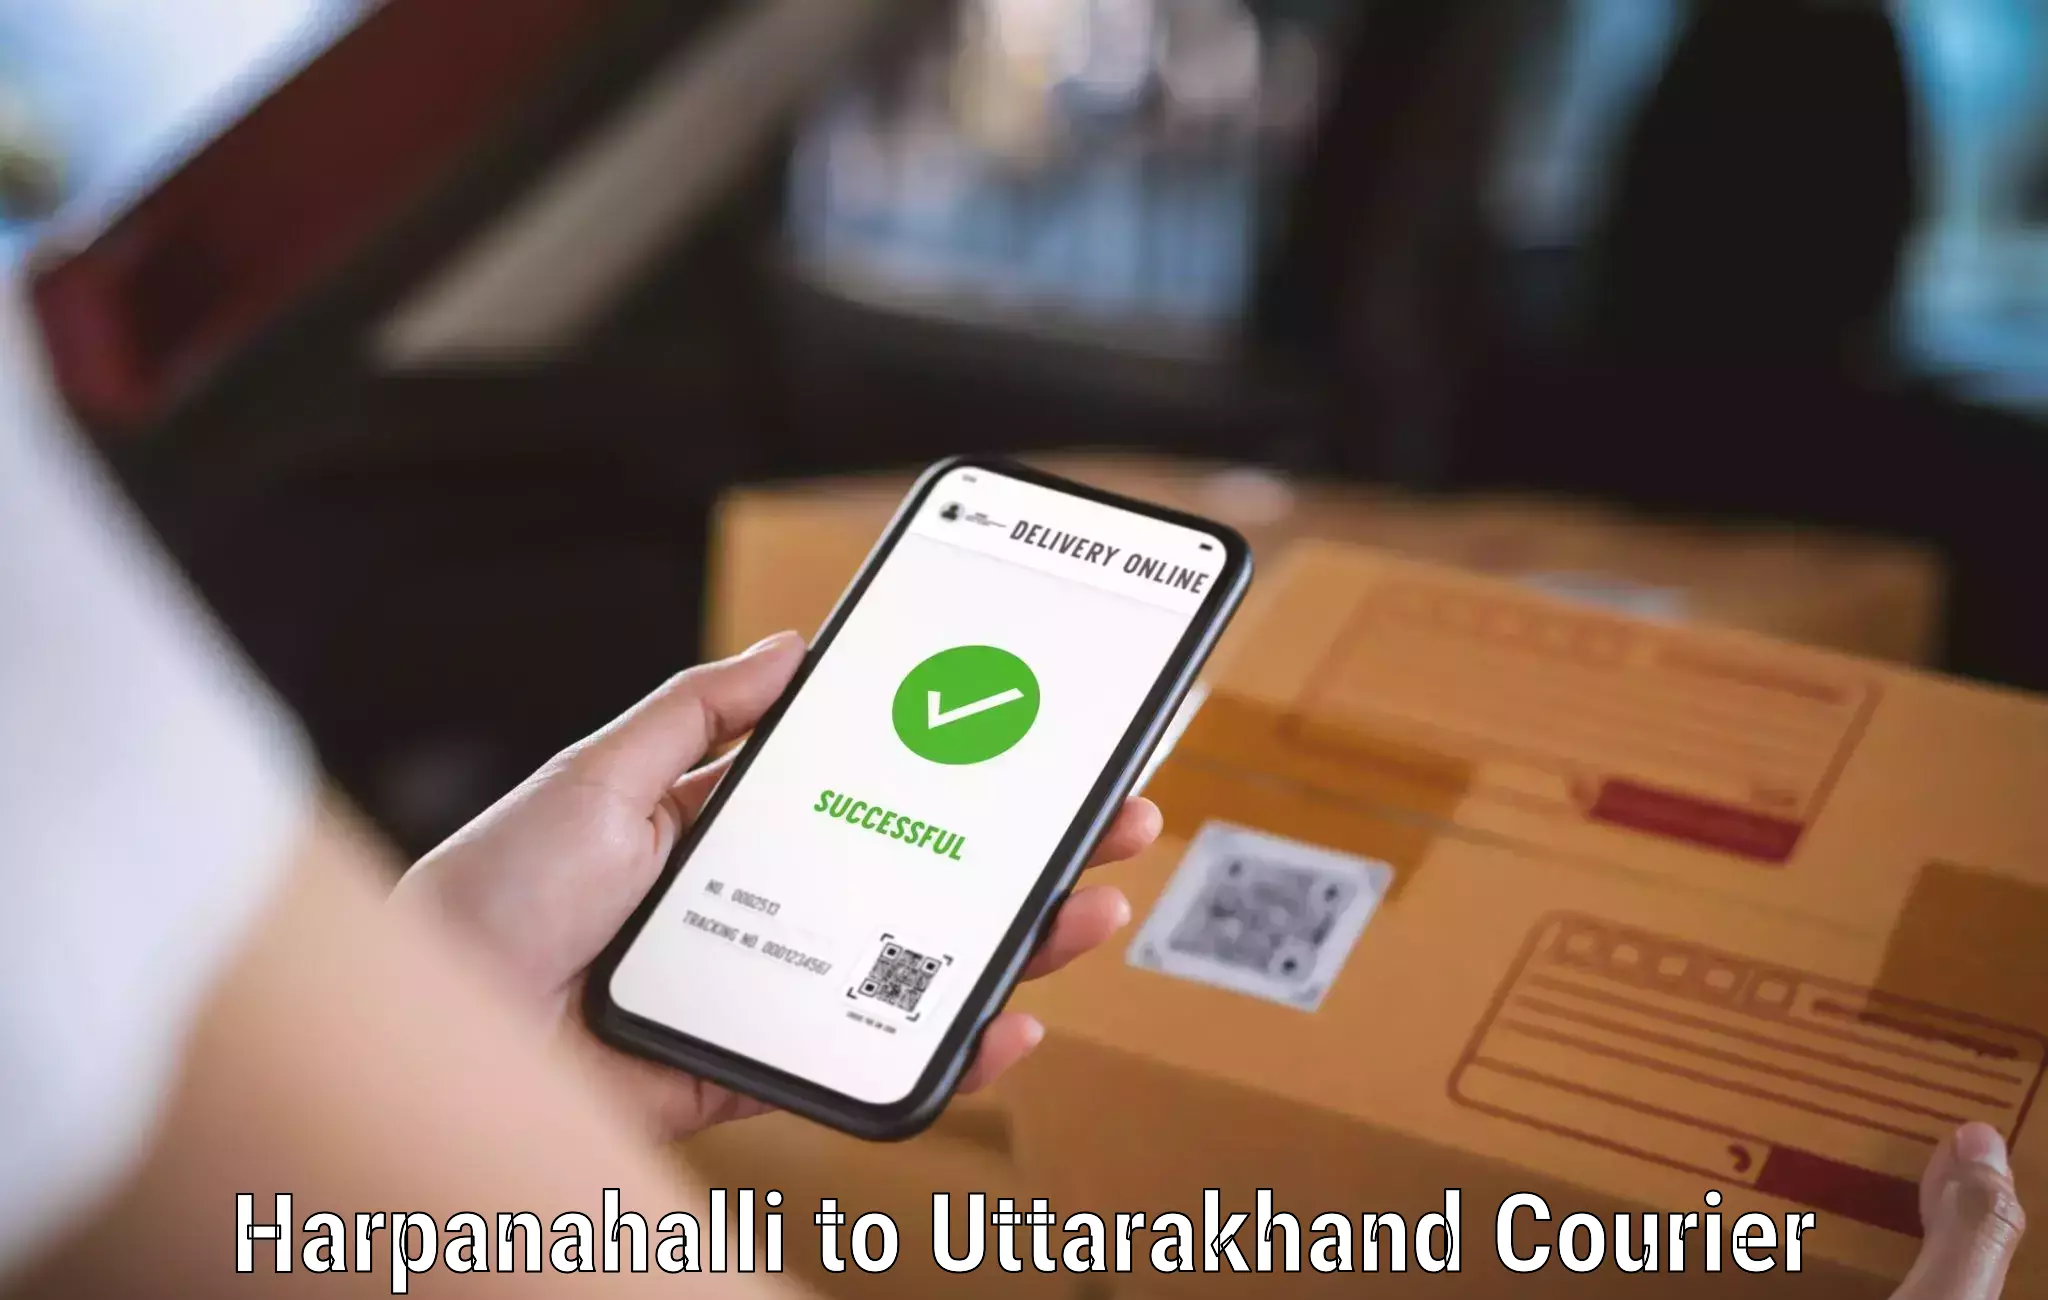 24-hour delivery options Harpanahalli to Rishikesh